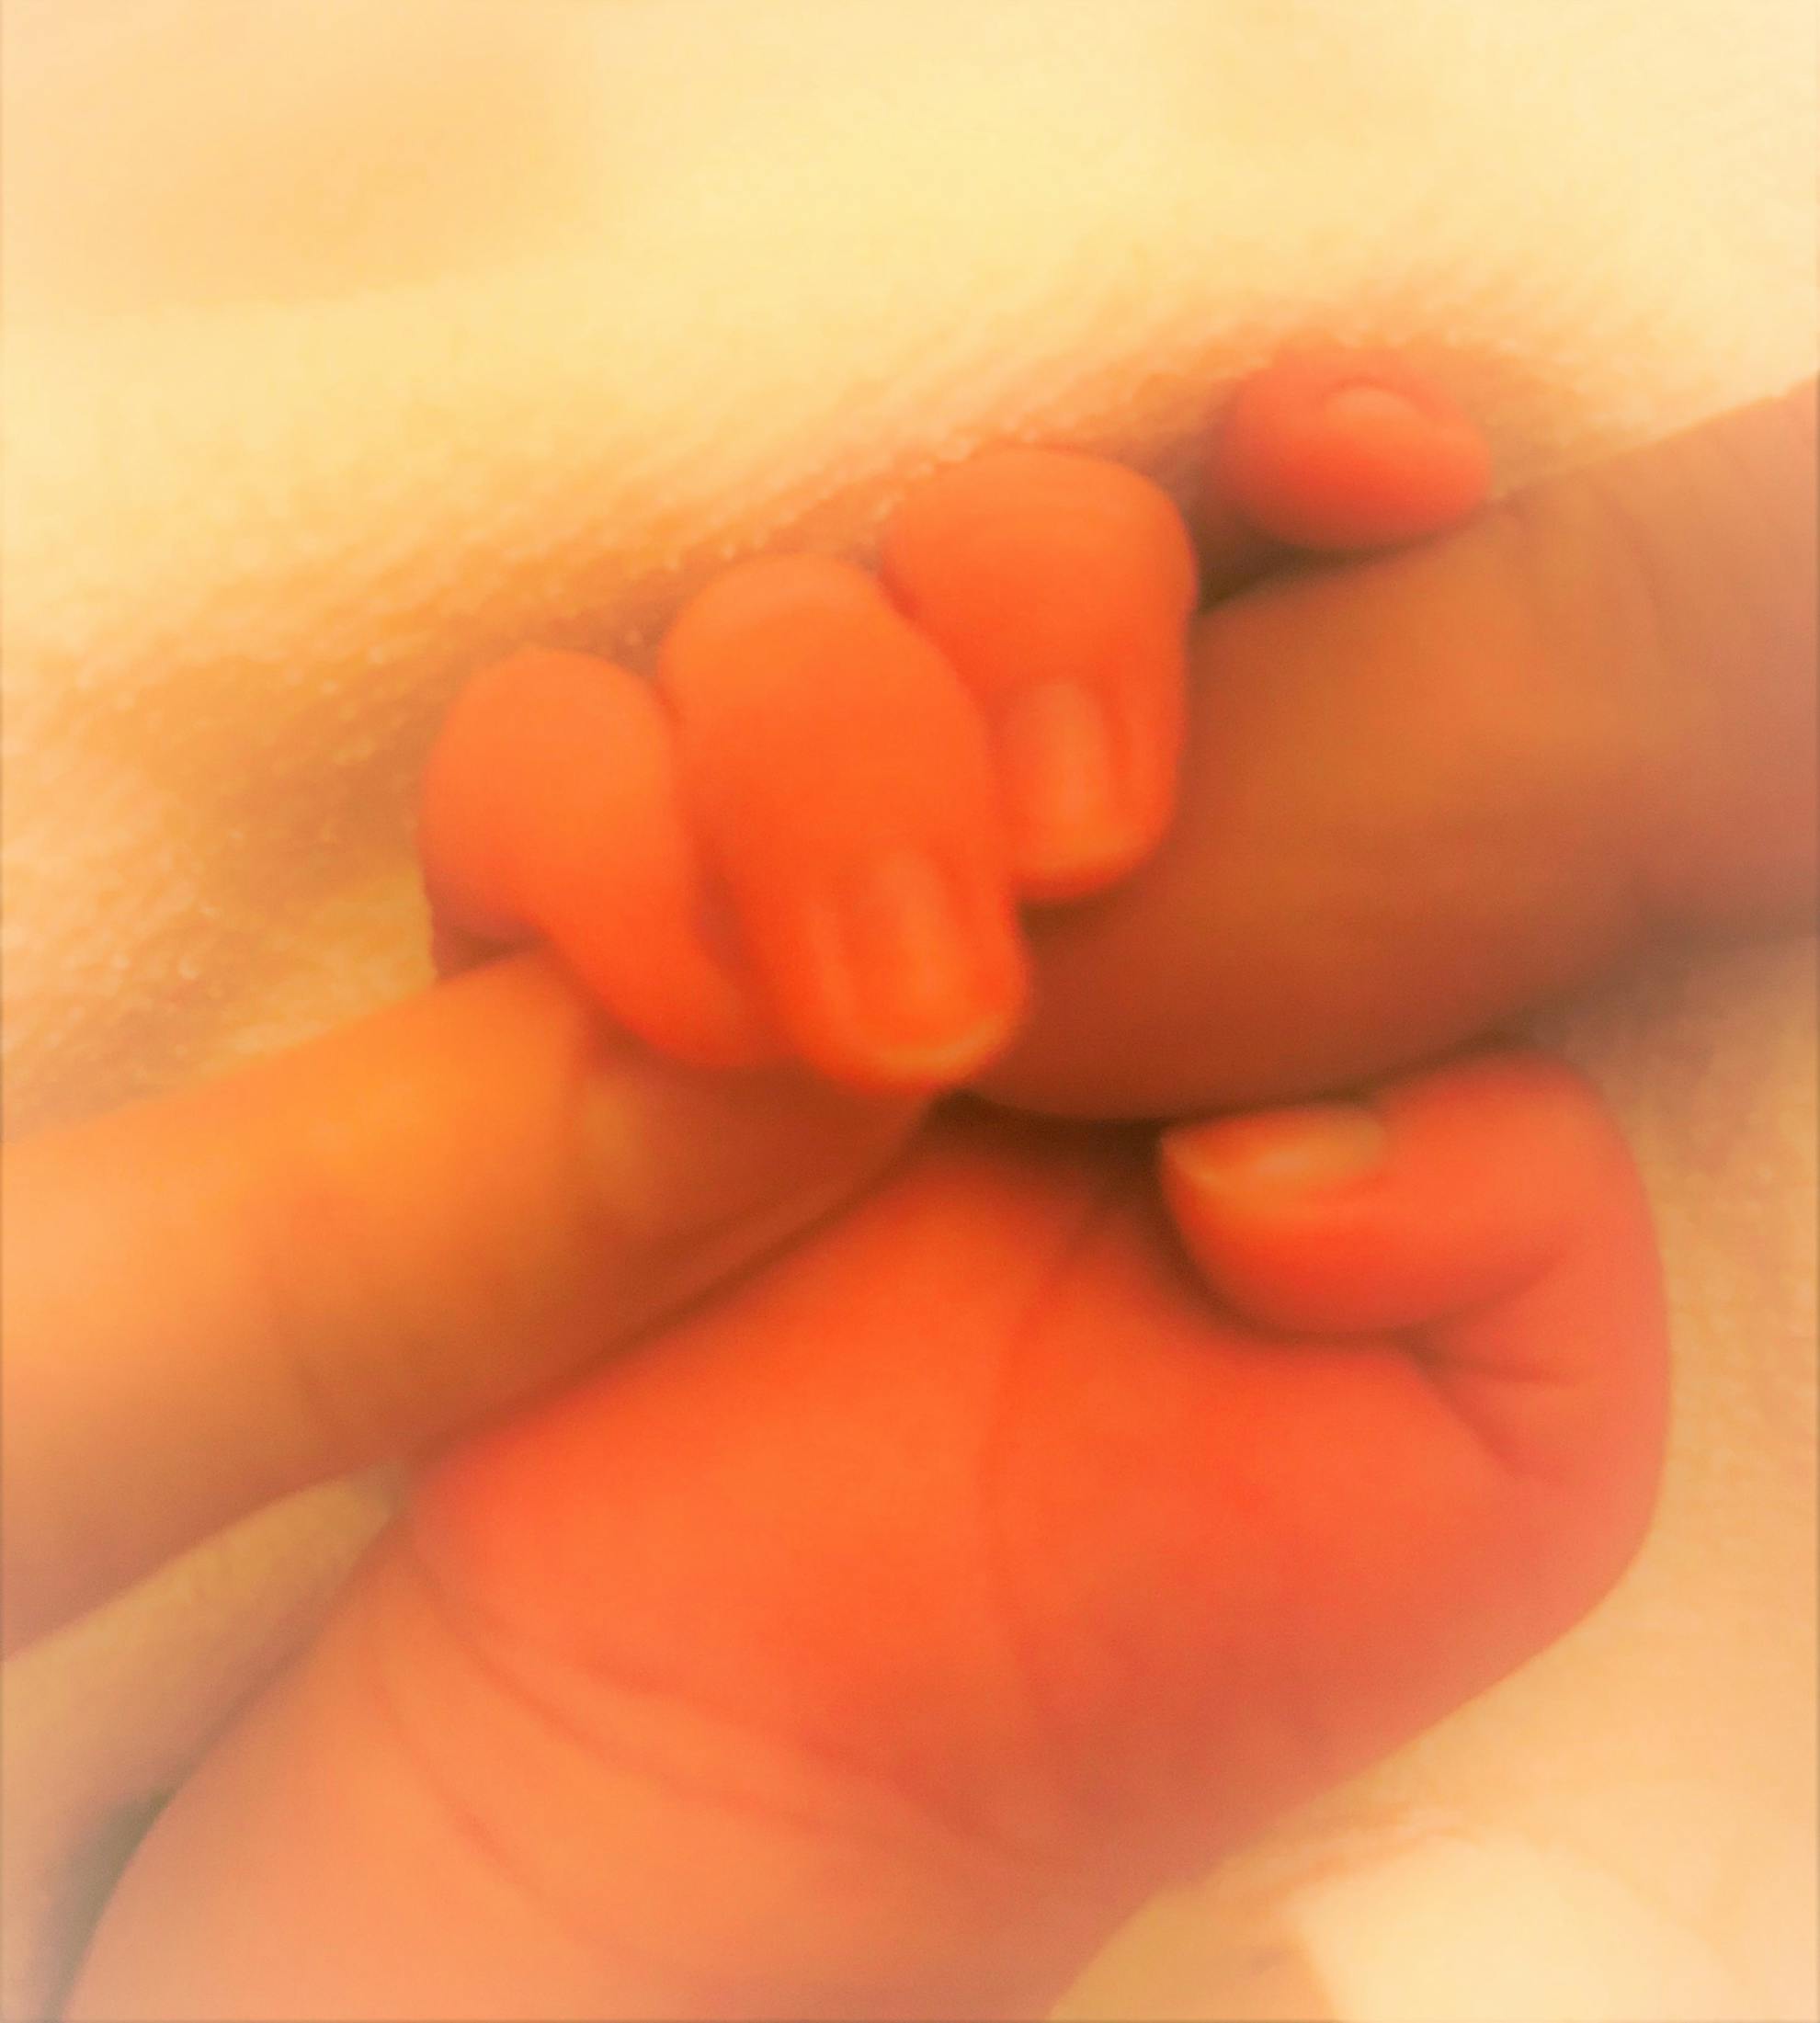 両親の指を握る赤ちゃんの手